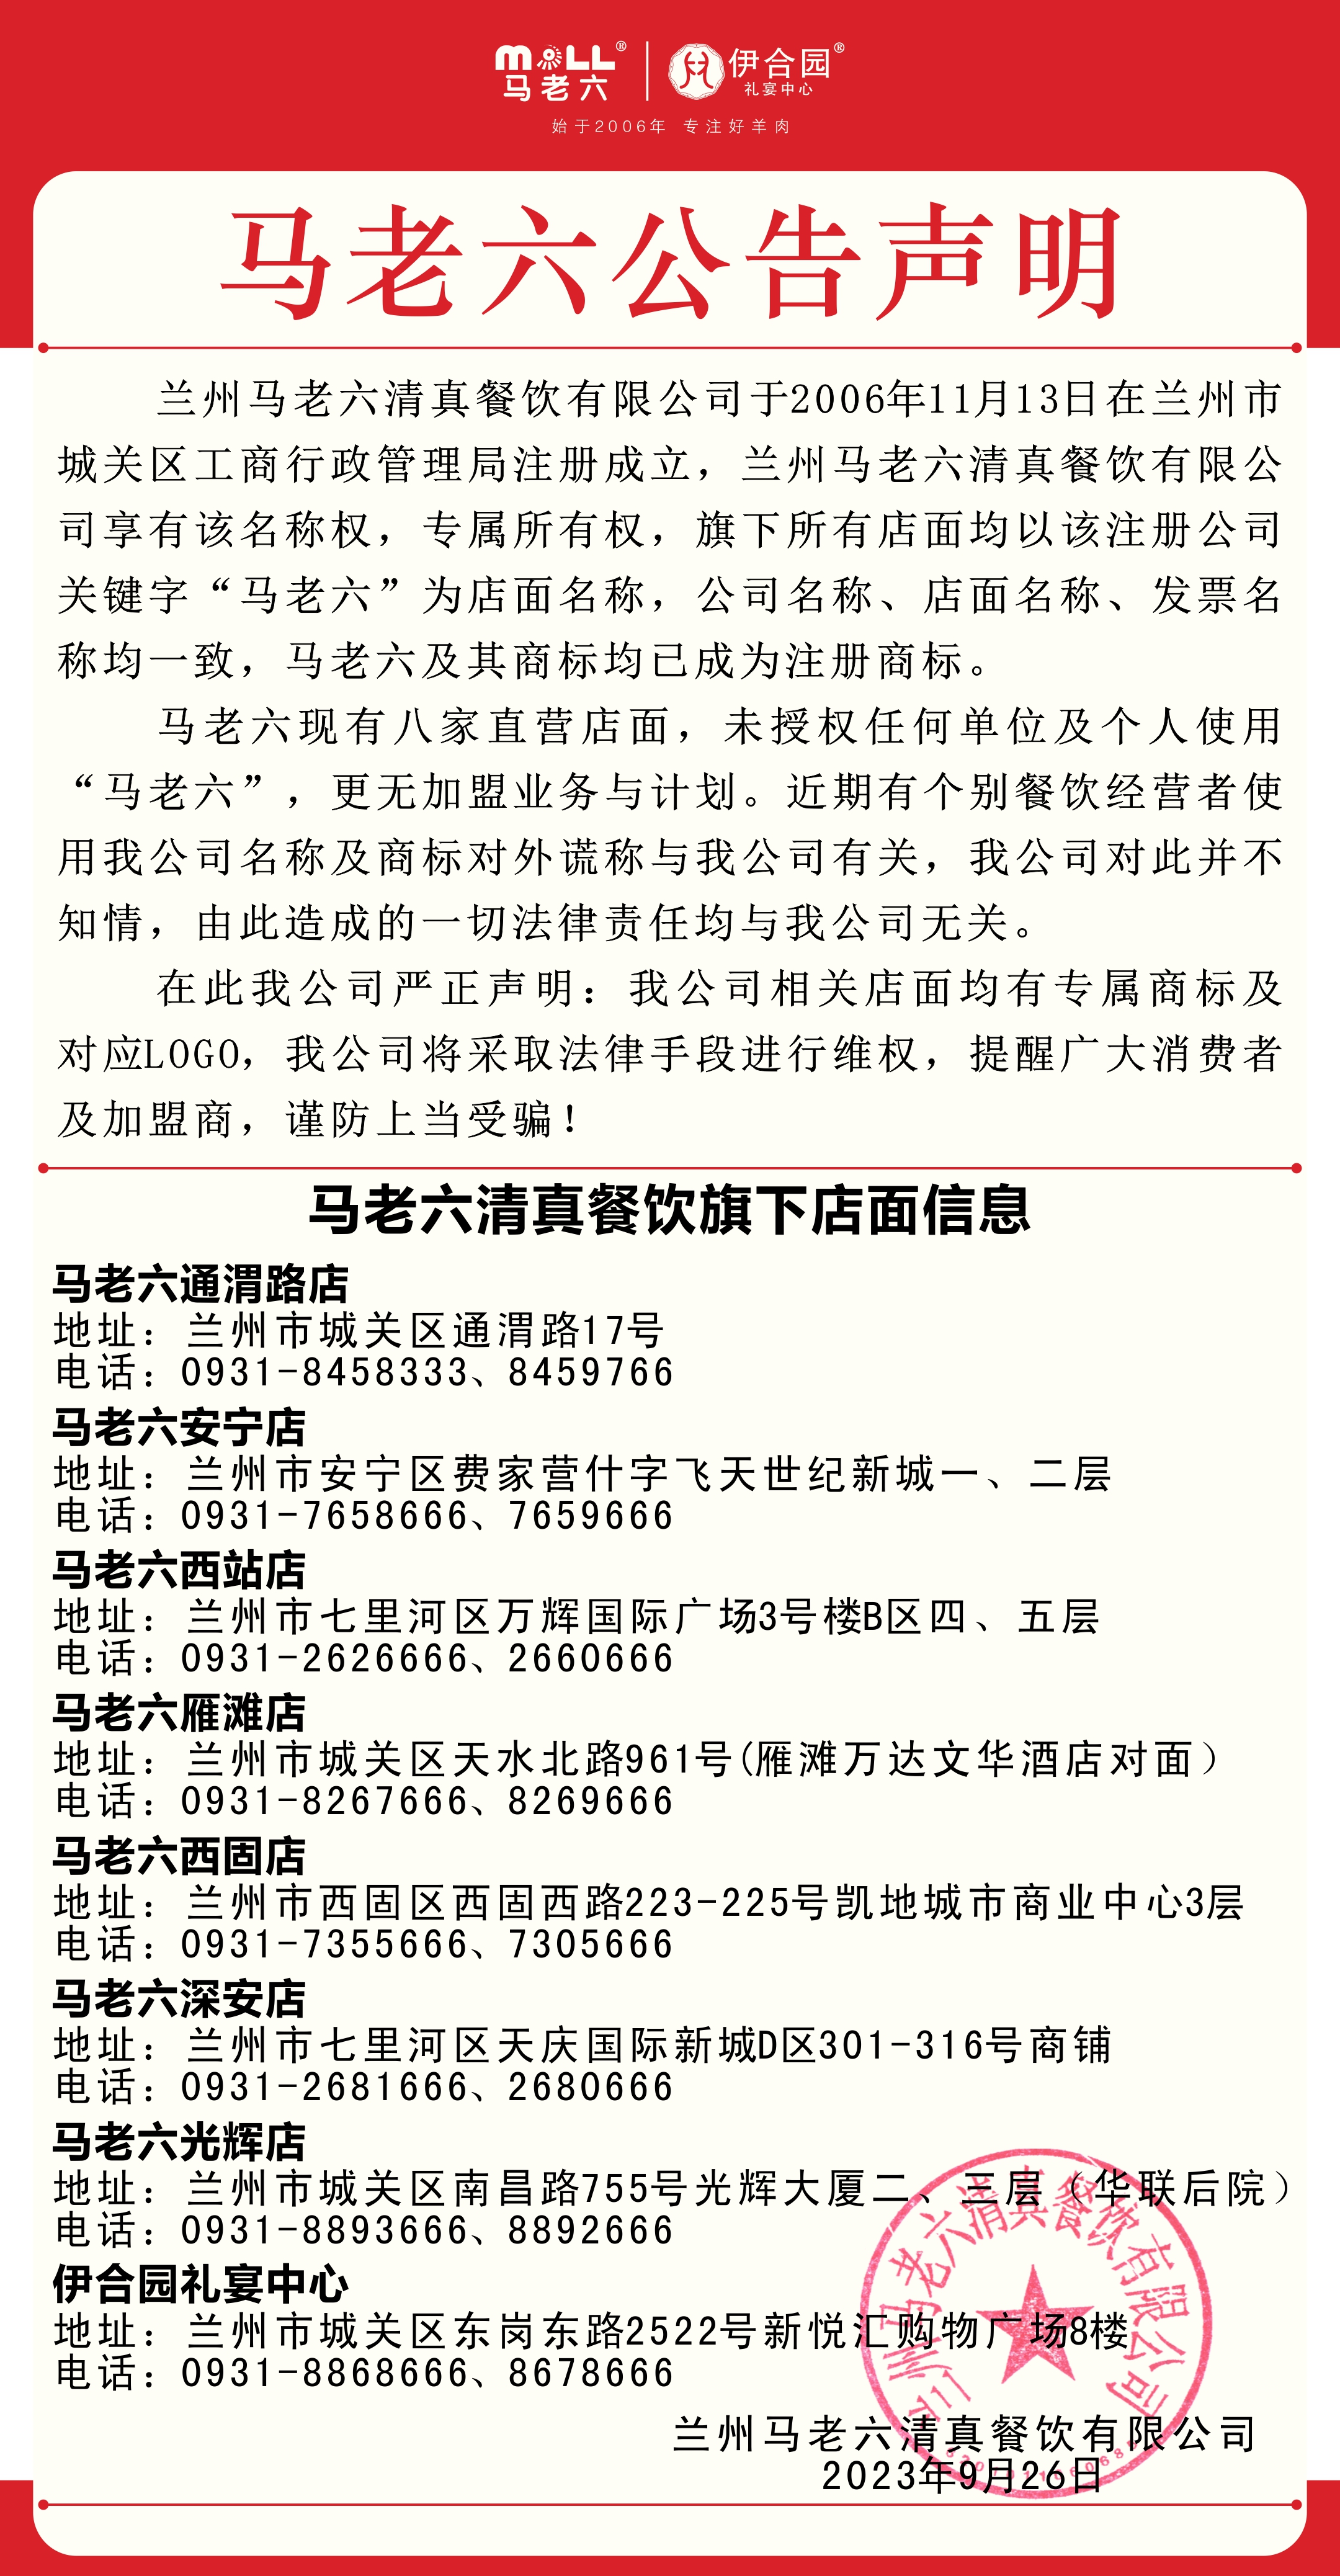 马老六公告声明5.jpg